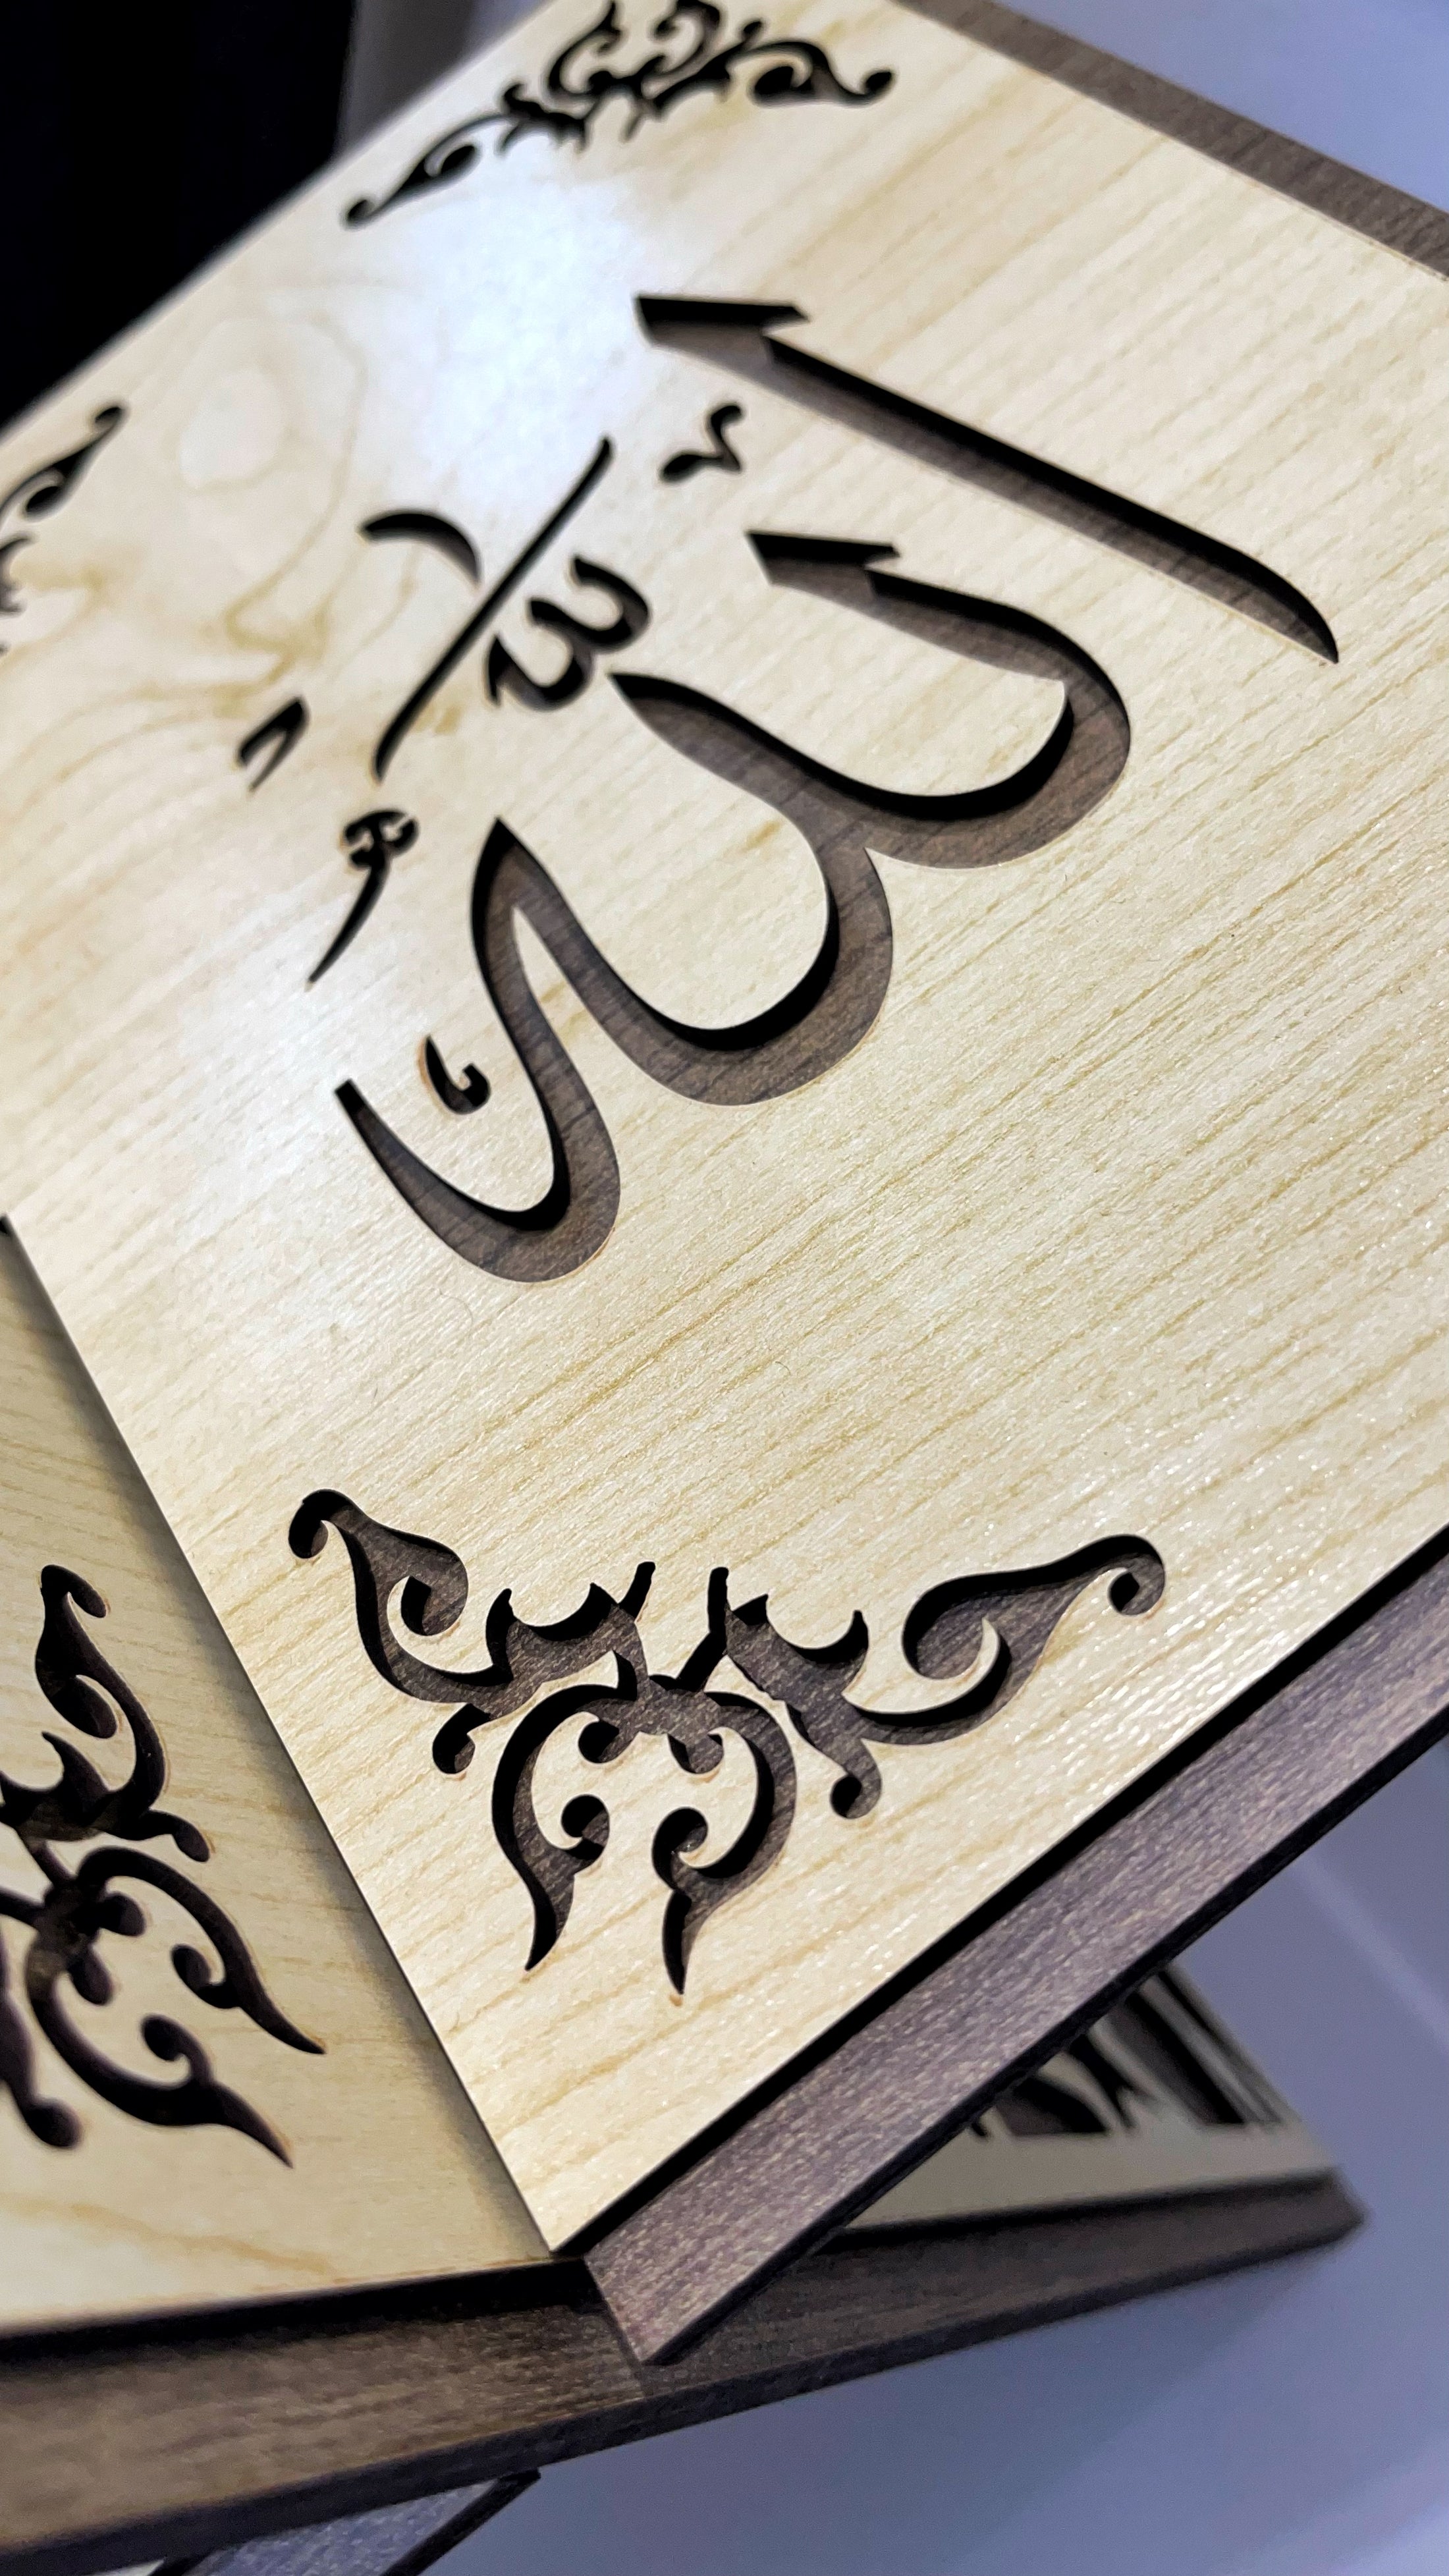 Leggio porta corano - Hijab Paradise - leggio in legno